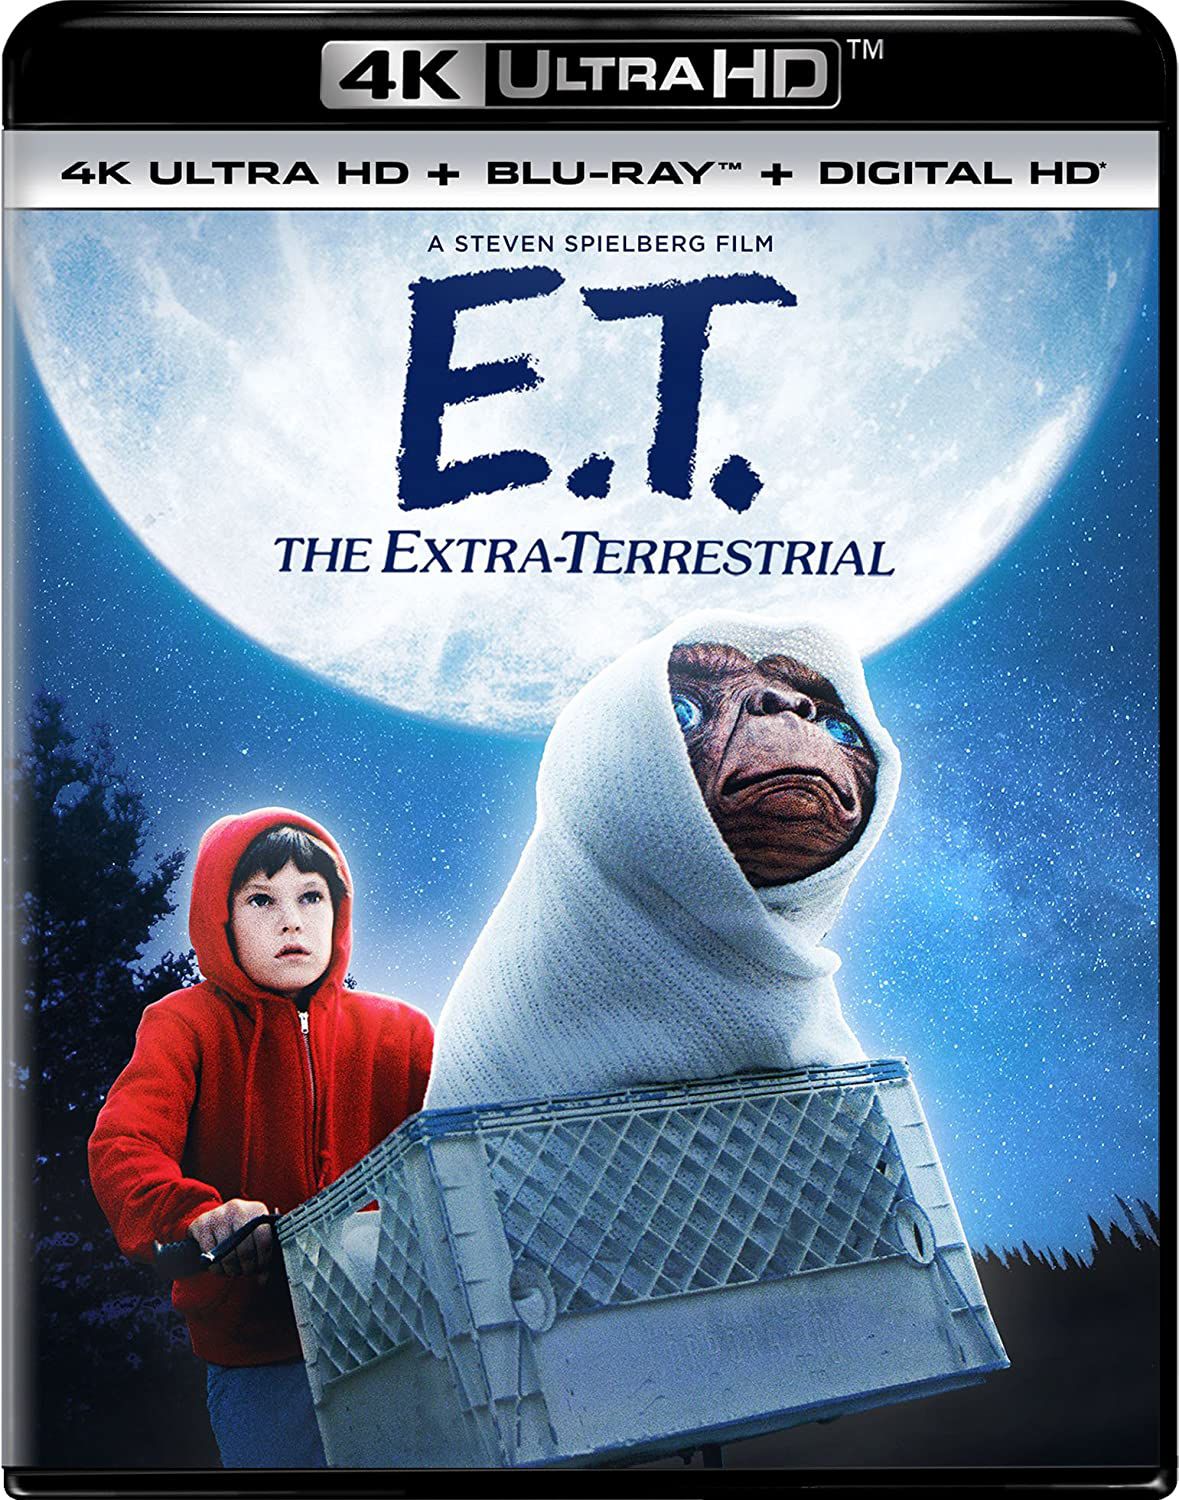 Il coperchio della scatola per 4k Ultra HD ET L'extraterrestre con Elliot che guida ET sulla sua bici davanti alla luna